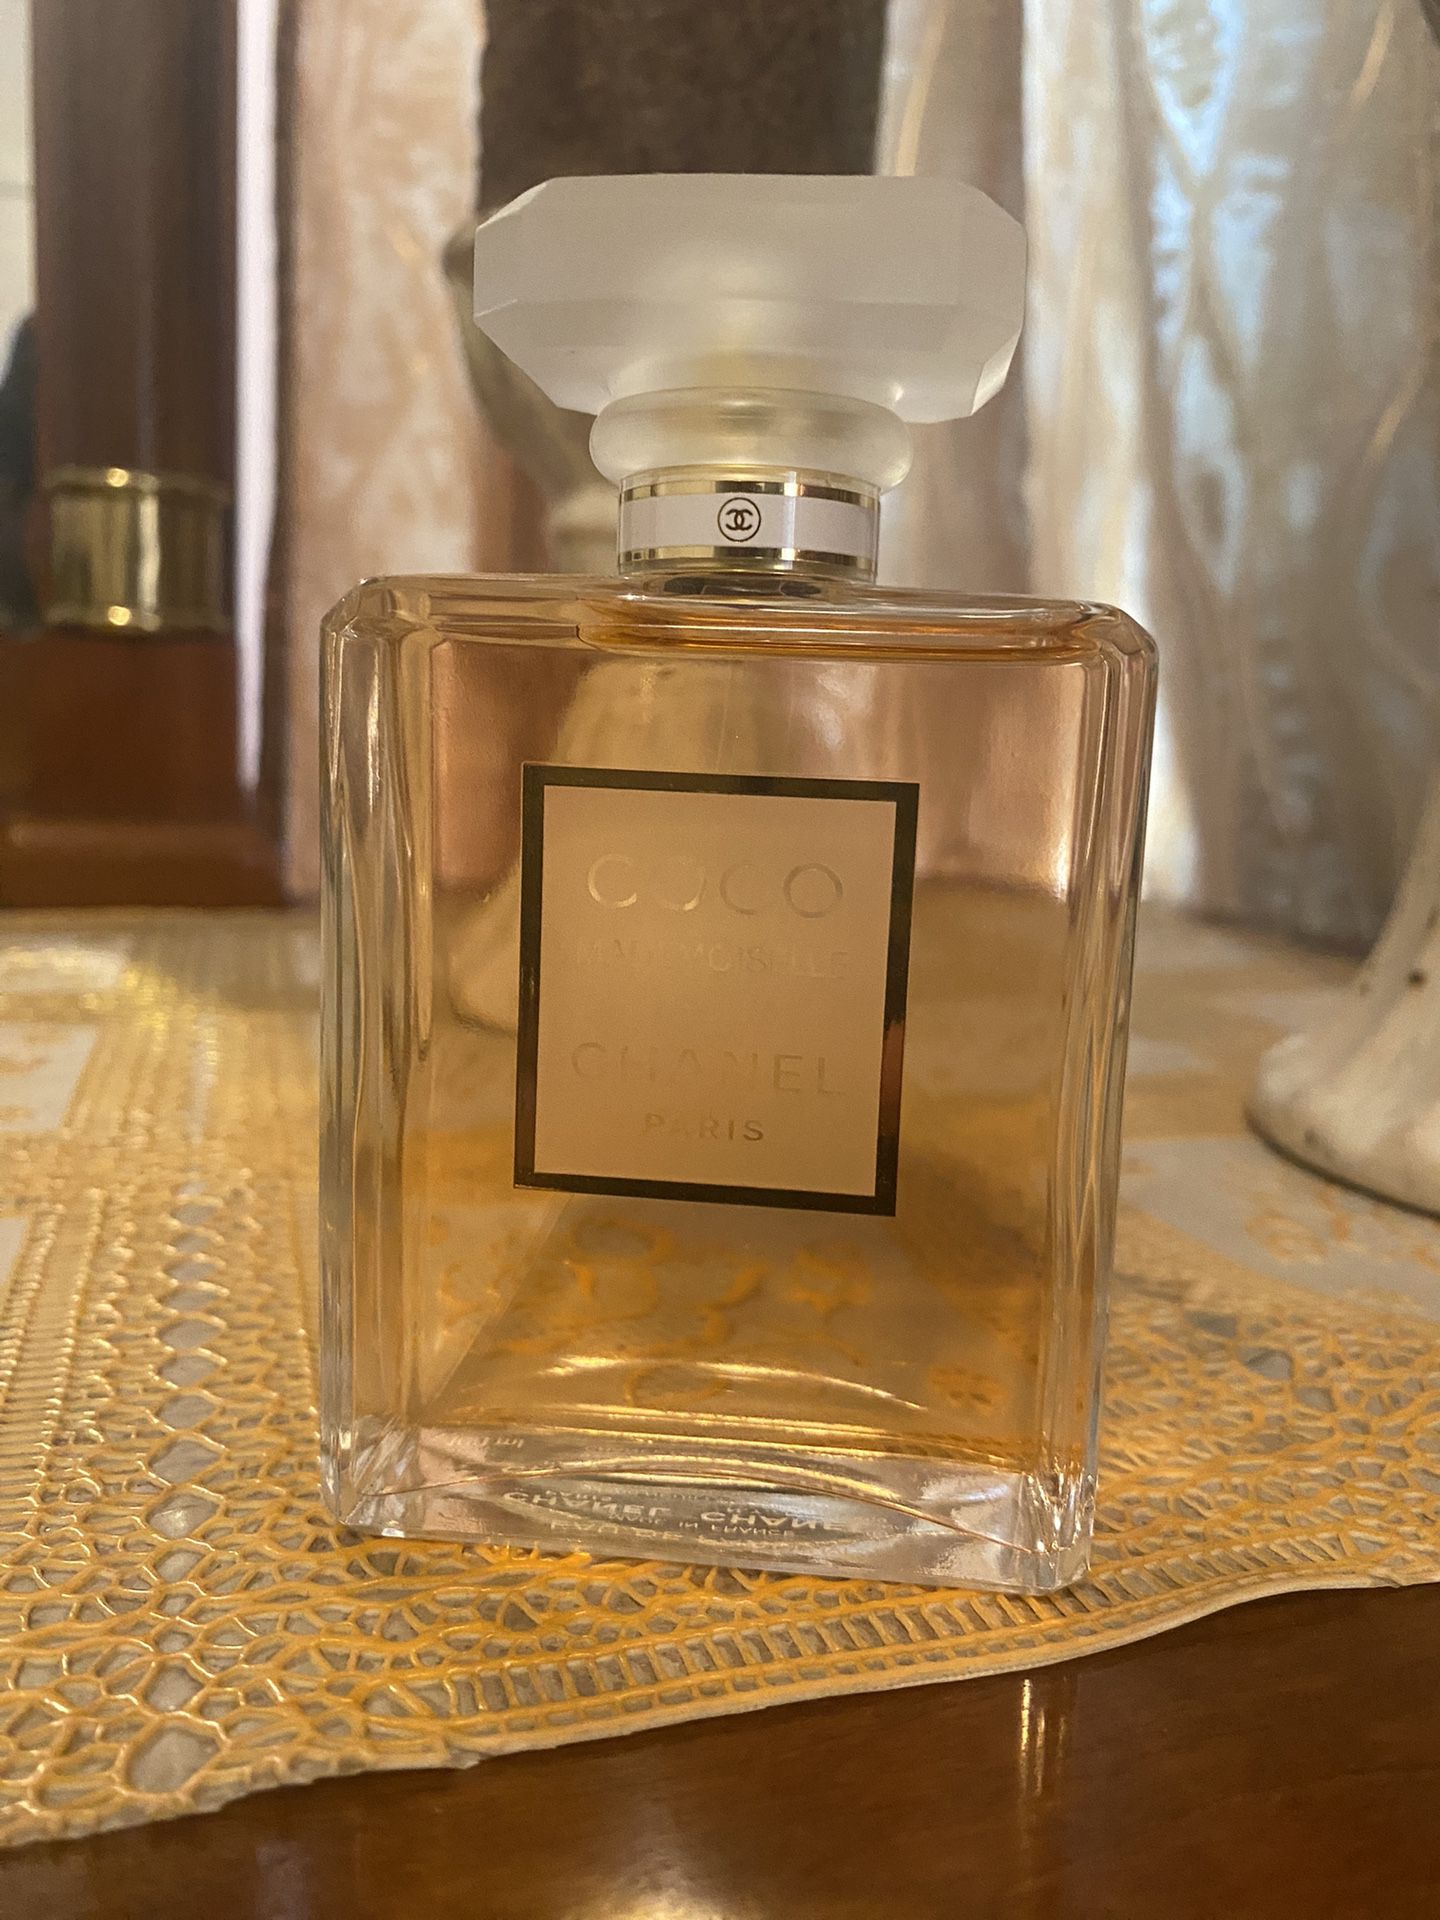 Coco Chanel Mademoiselle Eau De Parfum 3.4oz - $100!! for Sale